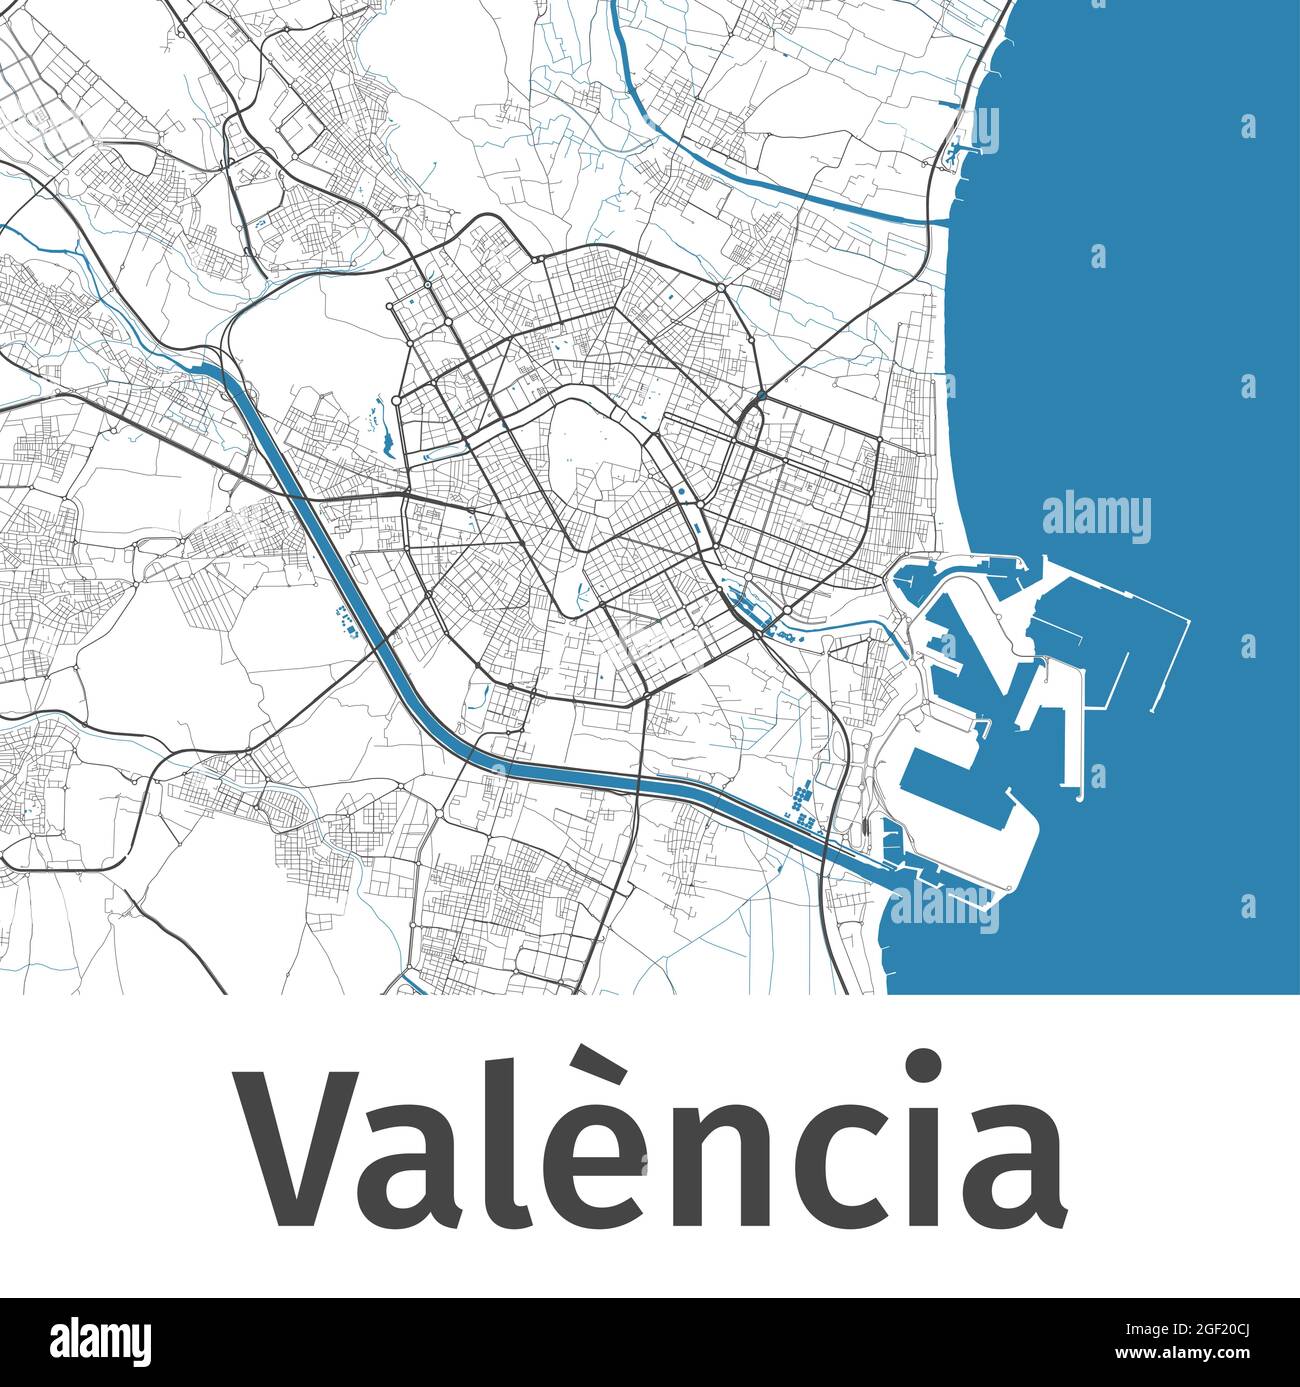 Carte de Valence. Plan détaillé de la zone administrative de Valence. Panorama urbain. Illustration vectorielle libre de droits. Carte avec autoroutes, stre Illustration de Vecteur